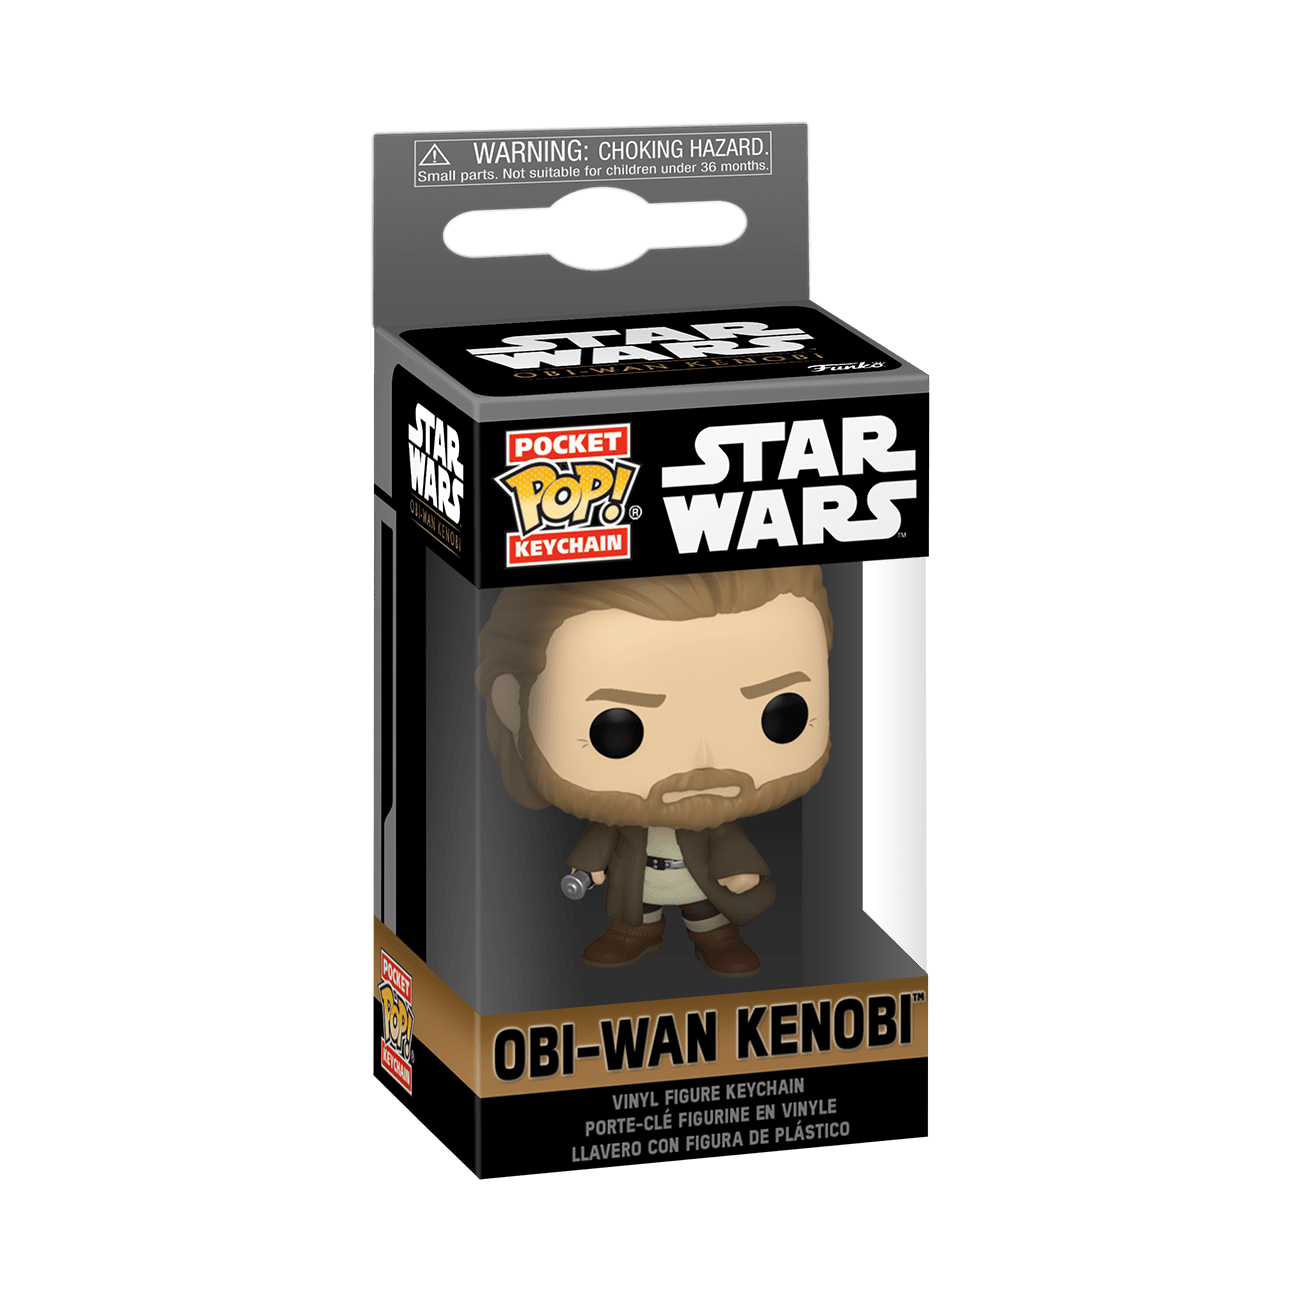 Obi-Wan - Purge Trooper Vinyl Figur 632, Star Wars Funko Pop!